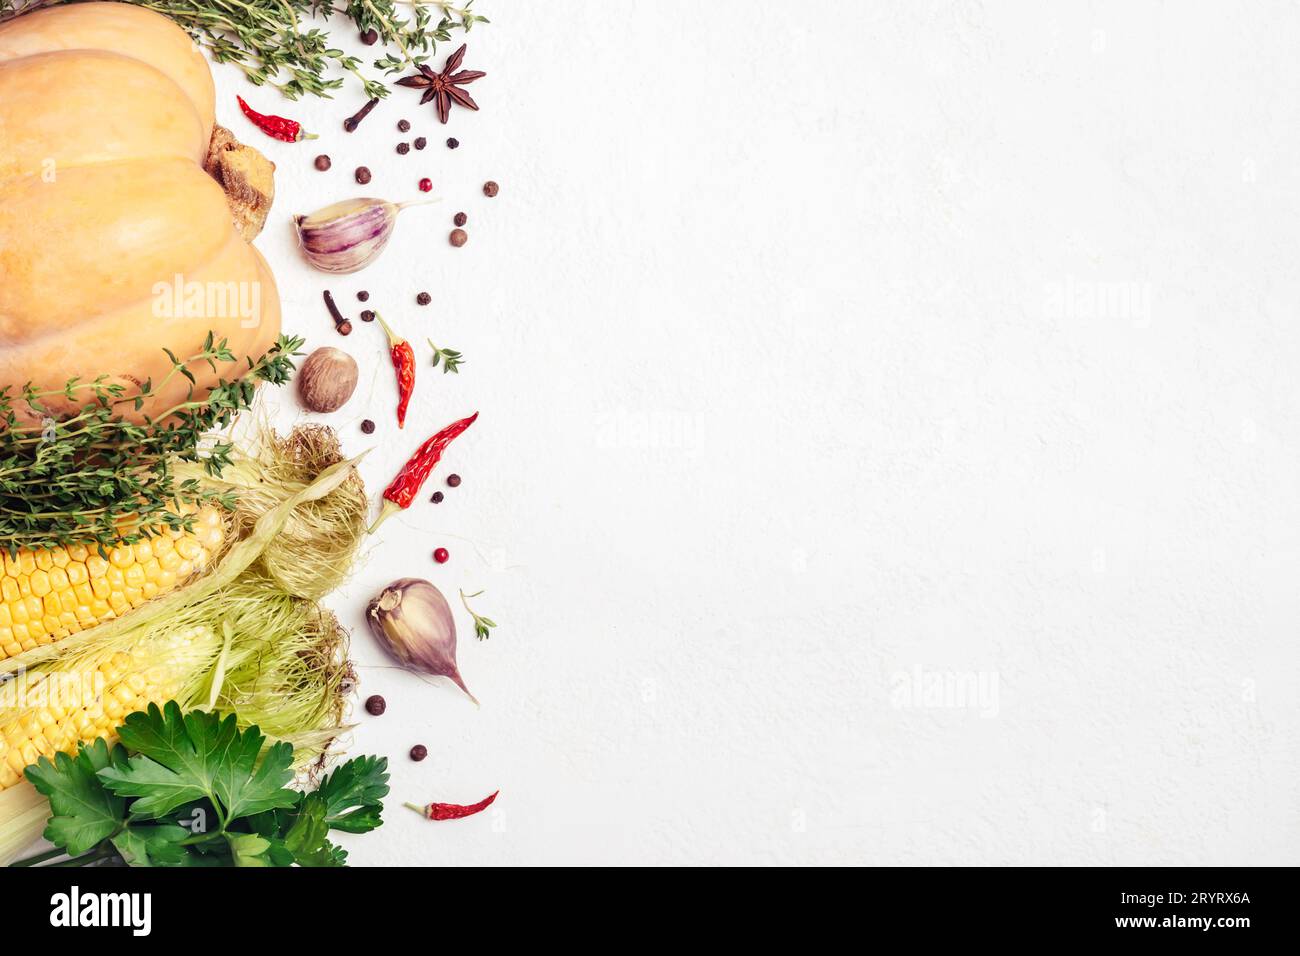 Herbstgemüse und Gewürze auf weißem Hintergrund. Gesunde und vegetarische Zutaten Stockfoto